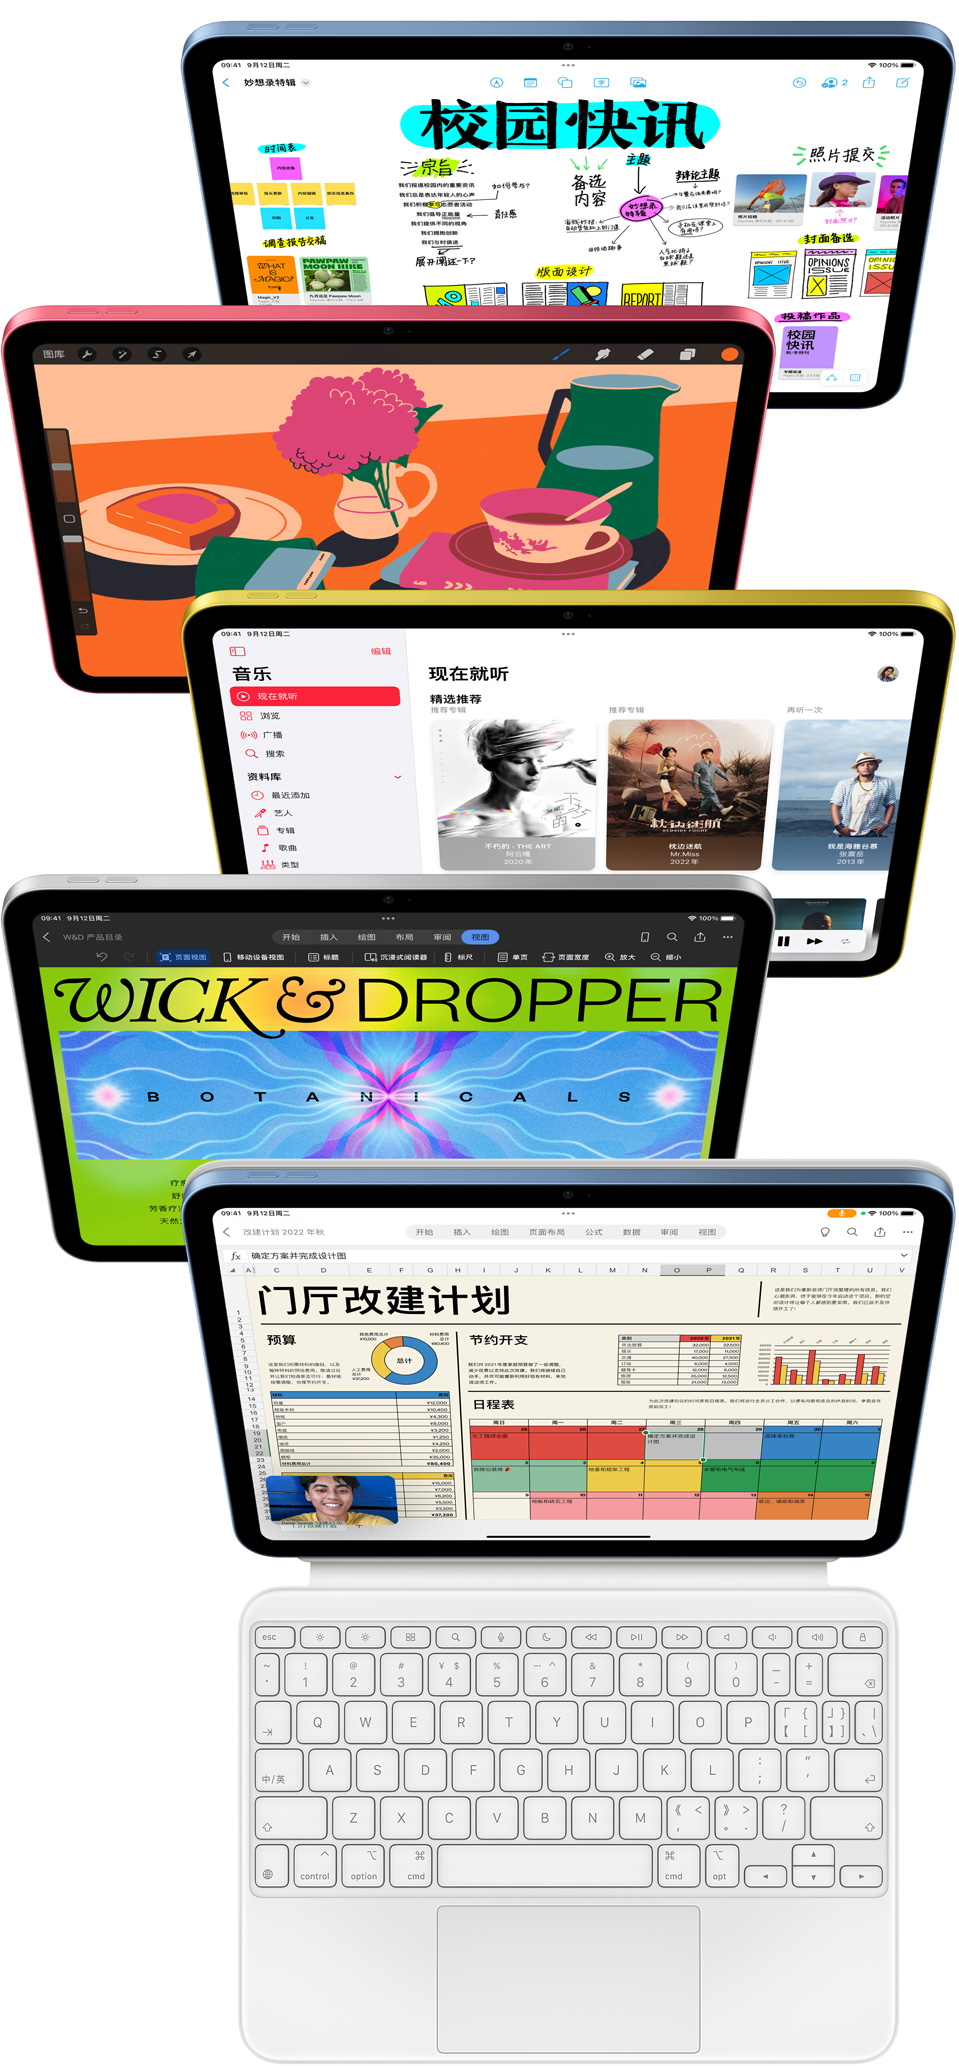 一组 iPad 的屏幕上各自显示着不同的 Apple app 和 App Store 的 app。